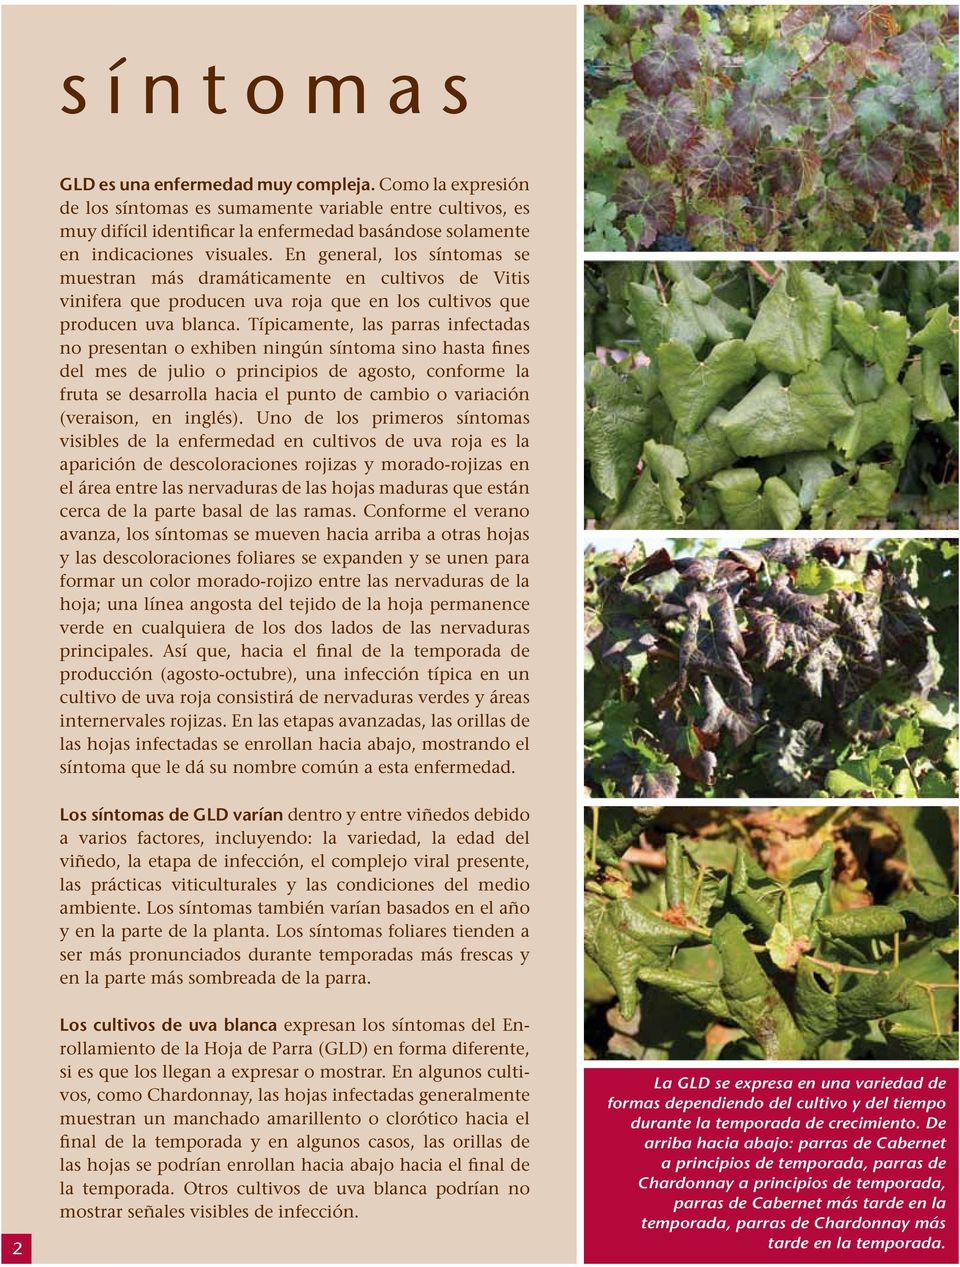 En general, los síntomas se muestran más dramáticamente en cultivos de Vitis vinifera que producen uva roja que en los cultivos que producen uva blanca.